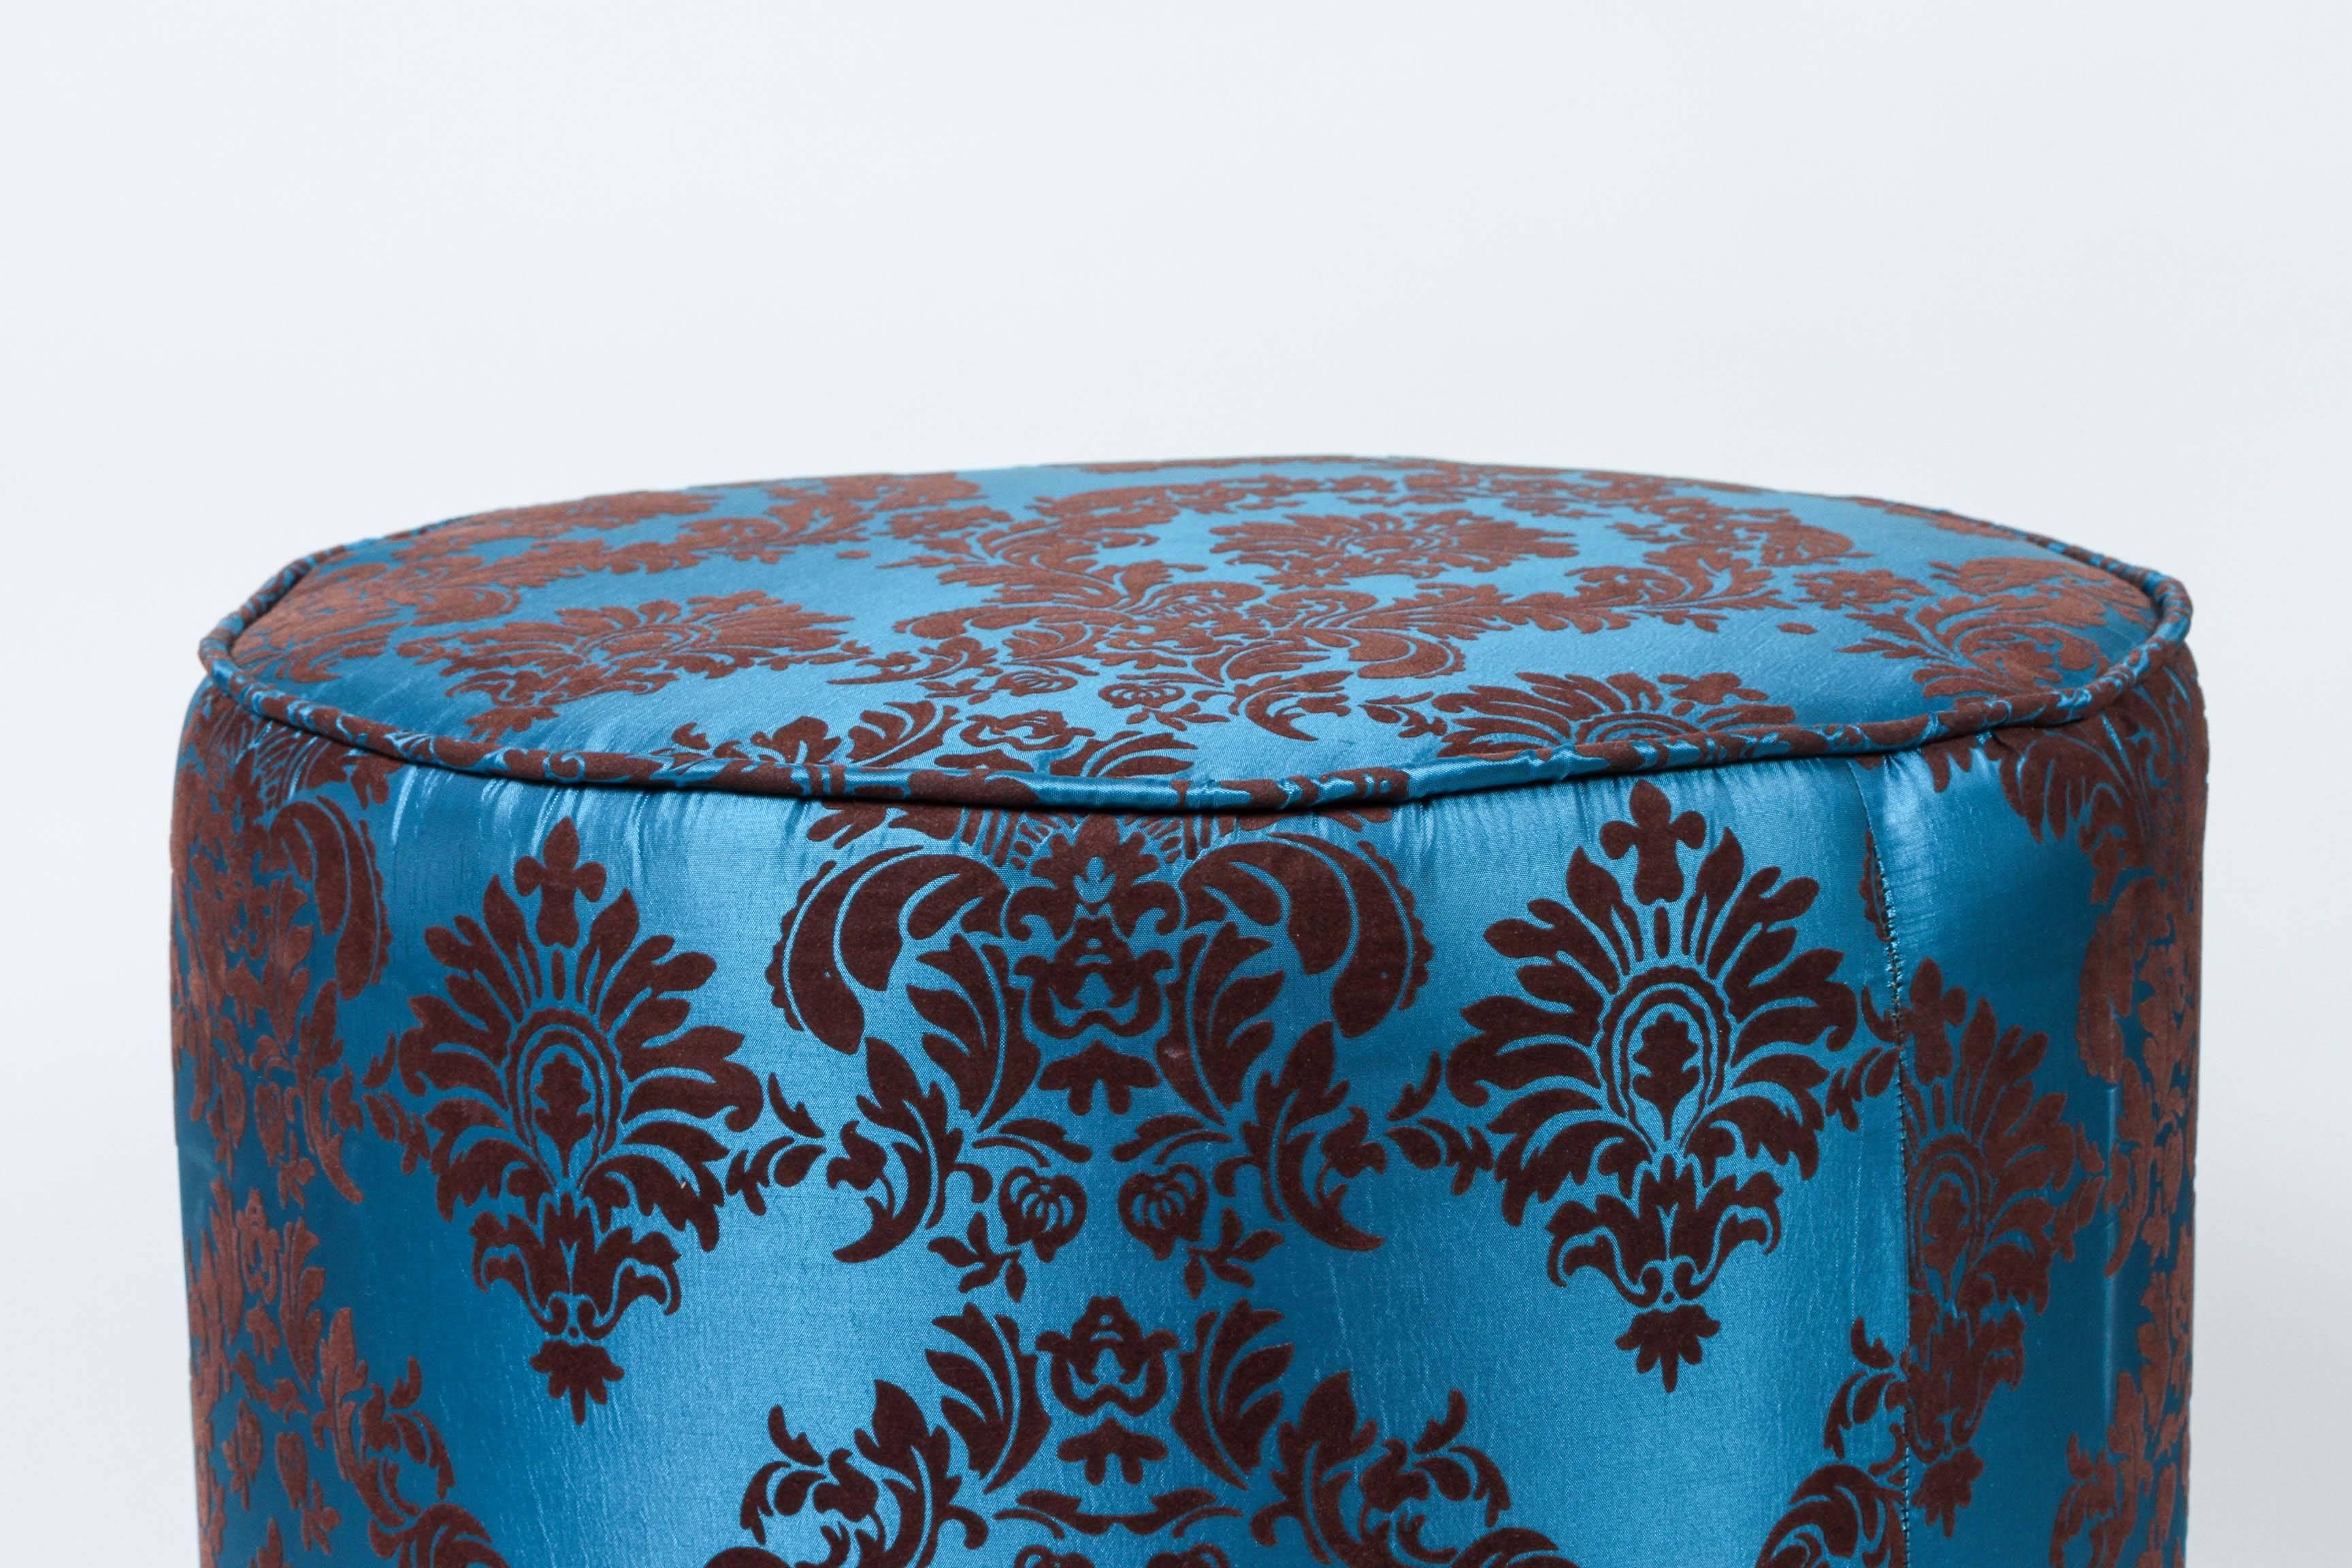 Pouf marocain rond vintage en velours coupé bleu et brun, de style Art Déco.
Petit pouf marocain hassock, pouf rembourré ou ottoman circulaire moderne, siège de vanité.
Ce meuble d'appoint polyvalent, le pouf, est conçu principalement pour